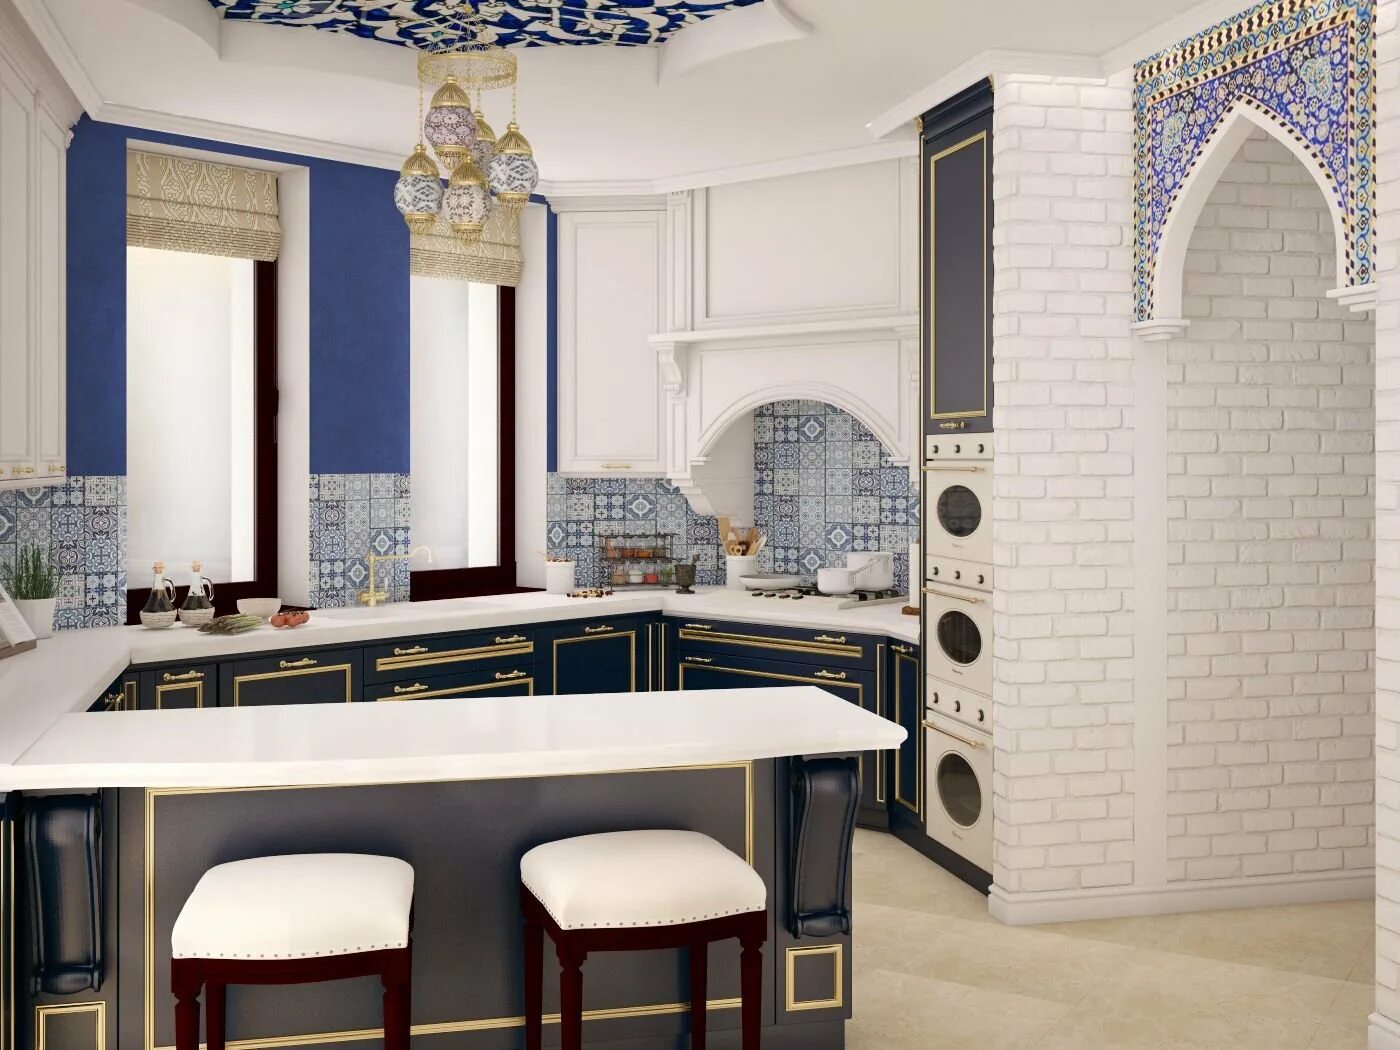 Этническая кухня. Кухня в стиле Марракеш. Стиль Марокко кухни марокканский стиль. Кухонный гарнитур в Восточном стиле Марокко. Кухня в стиле Марокко.